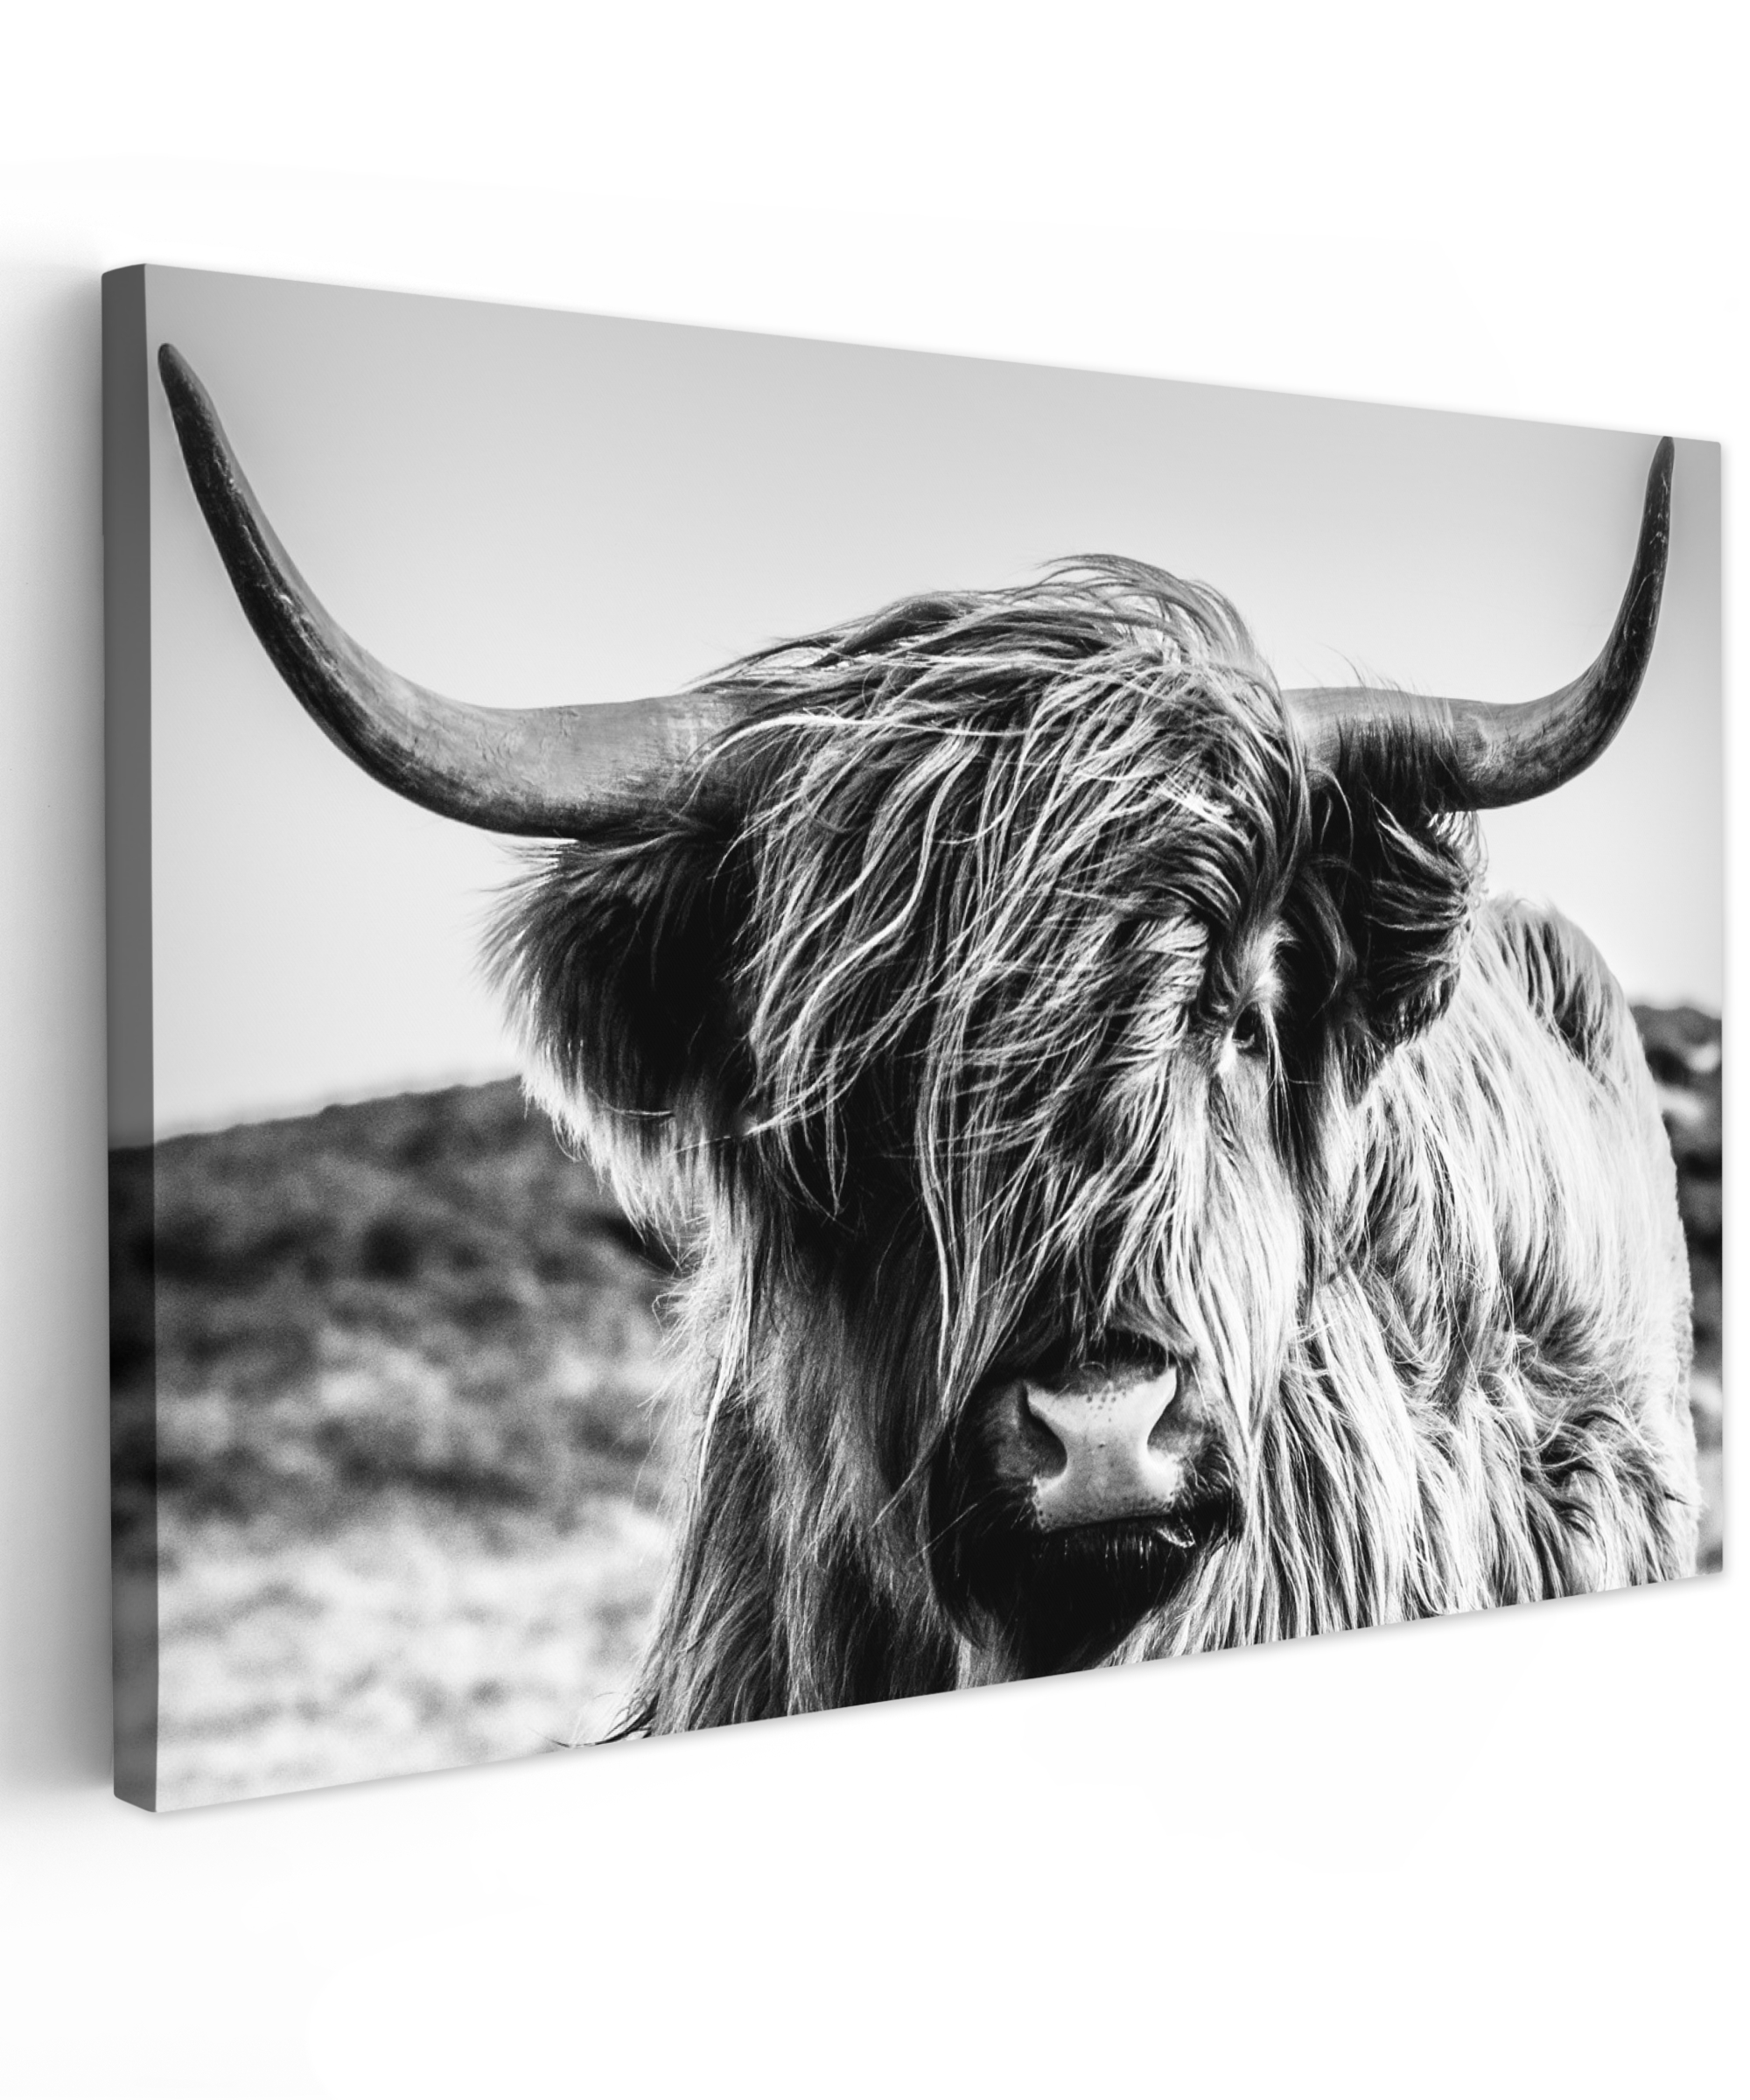 Tableau sur toile - Vache - Highlander écossais - Noir - Blanc - Animal - Nature - Sauvage